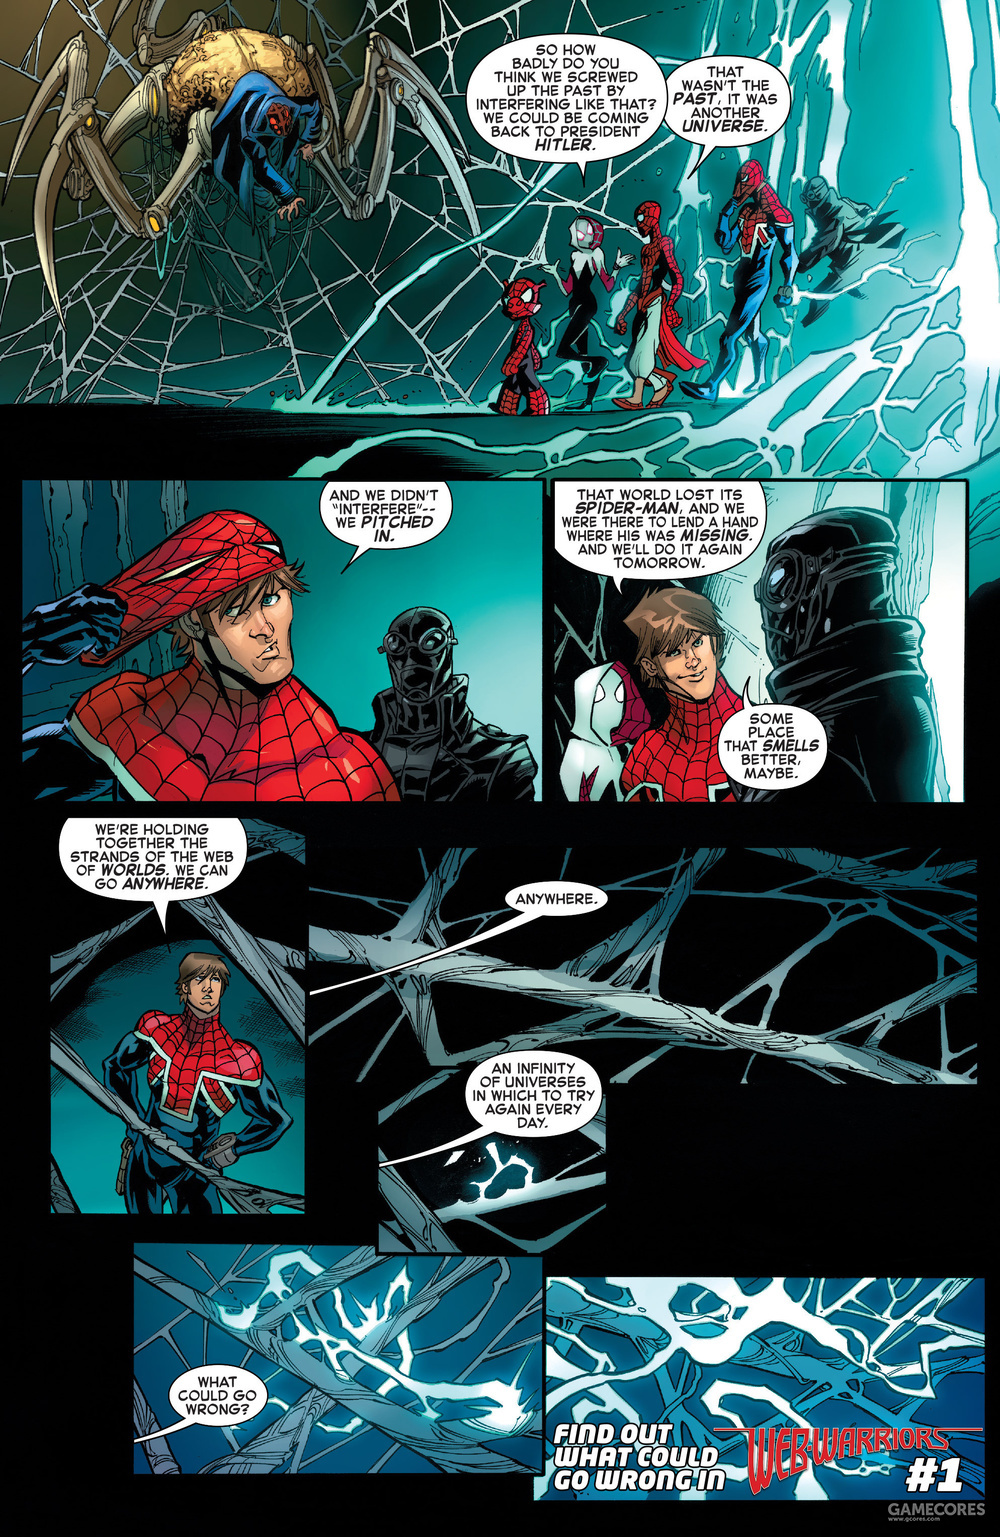 《蜘蛛侠:平行宇宙》中蜘蛛格温的故事你了解多少?